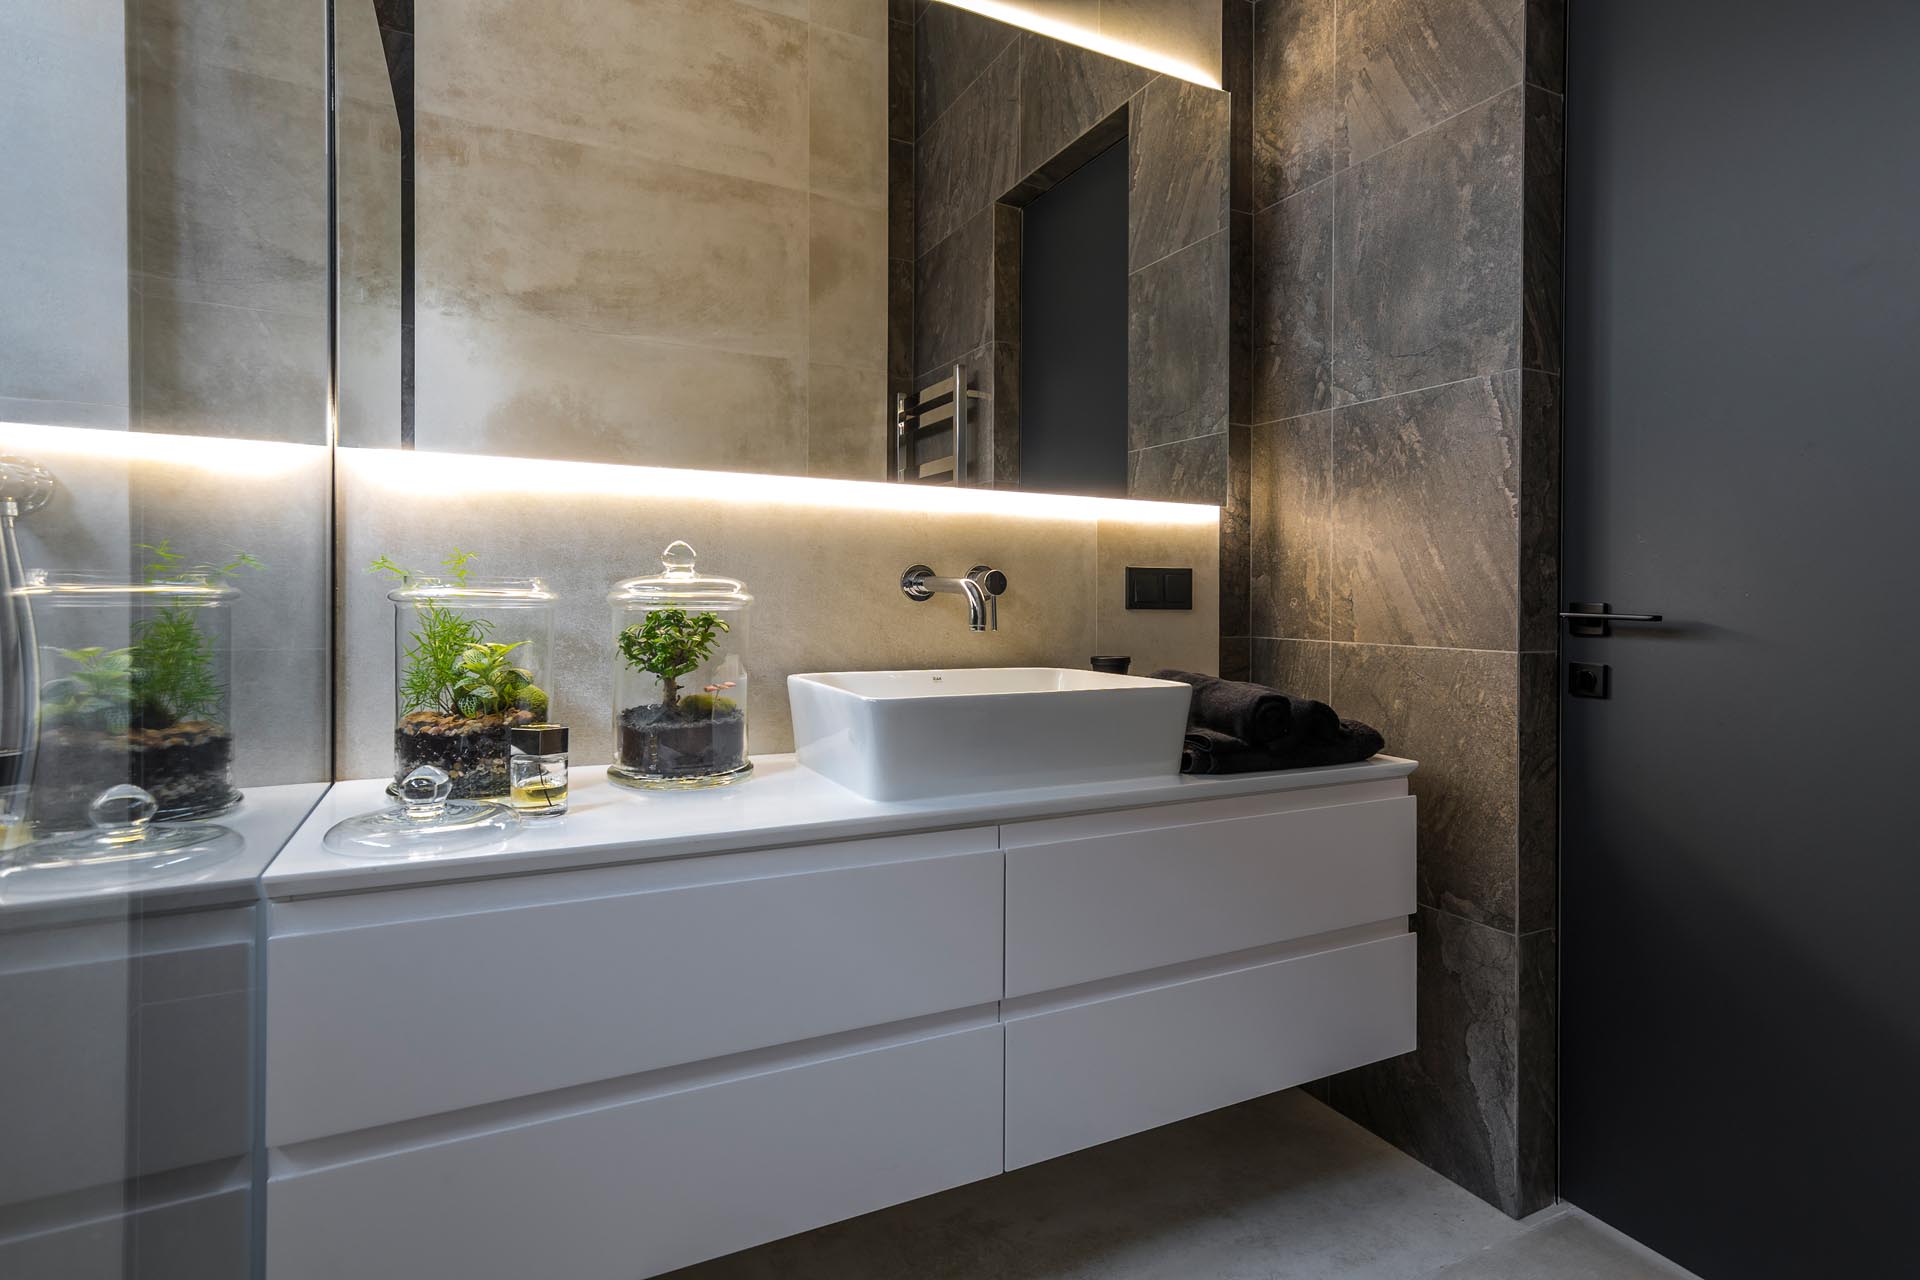 Современная ванная комната с белым туалетным столиком и зеркалом с подсветкой.